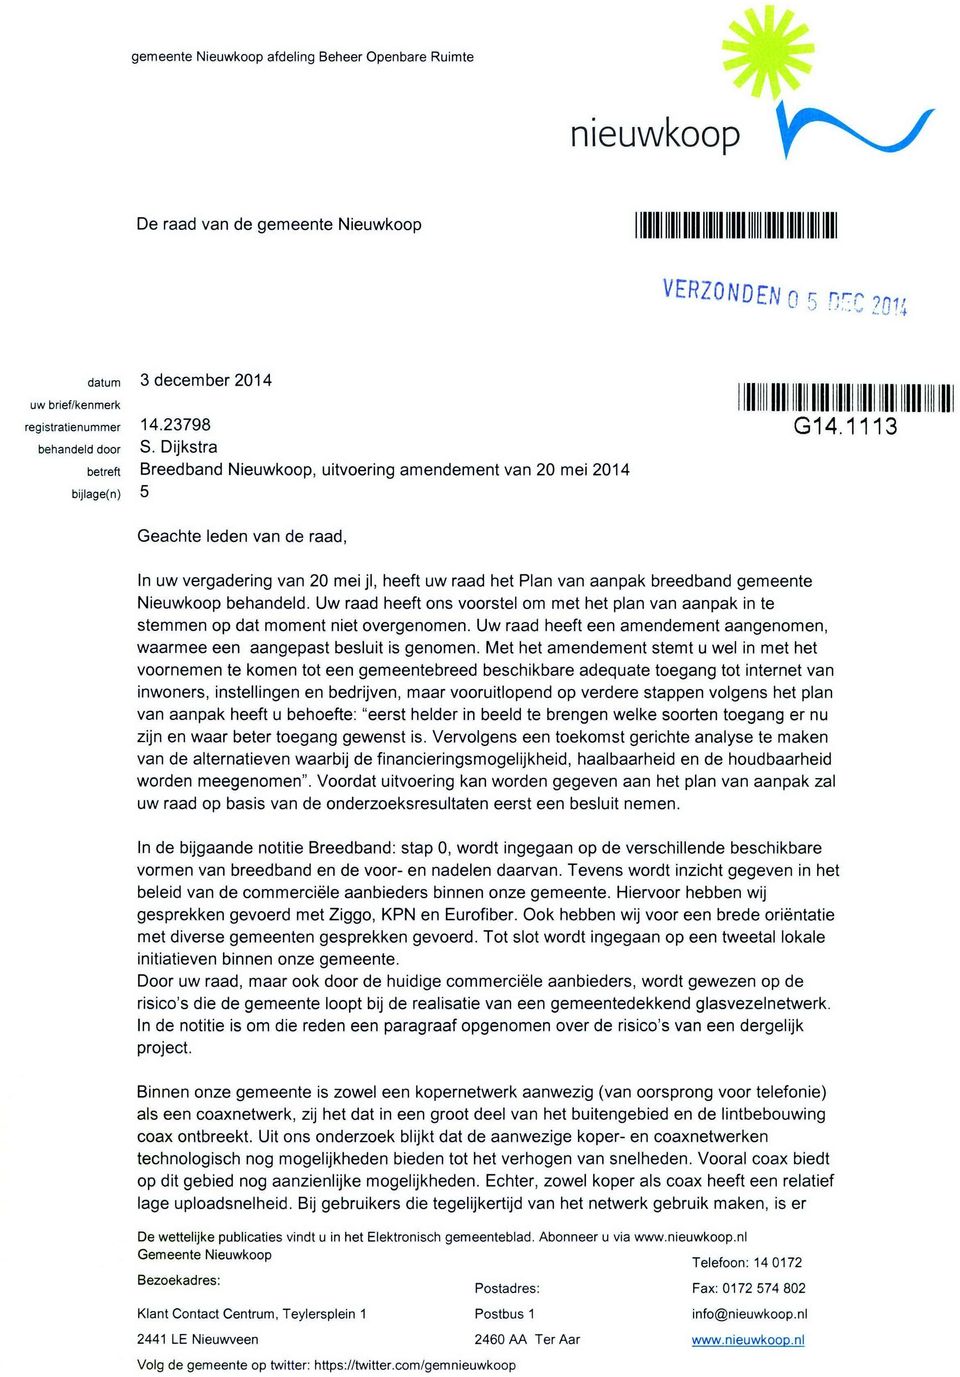 3 Geachte leden van de raad, In uw vergadering van 20 mei jl, heeft uw raad het Plan van aanpak breedband gemeente Nieuwkoop behandeld.